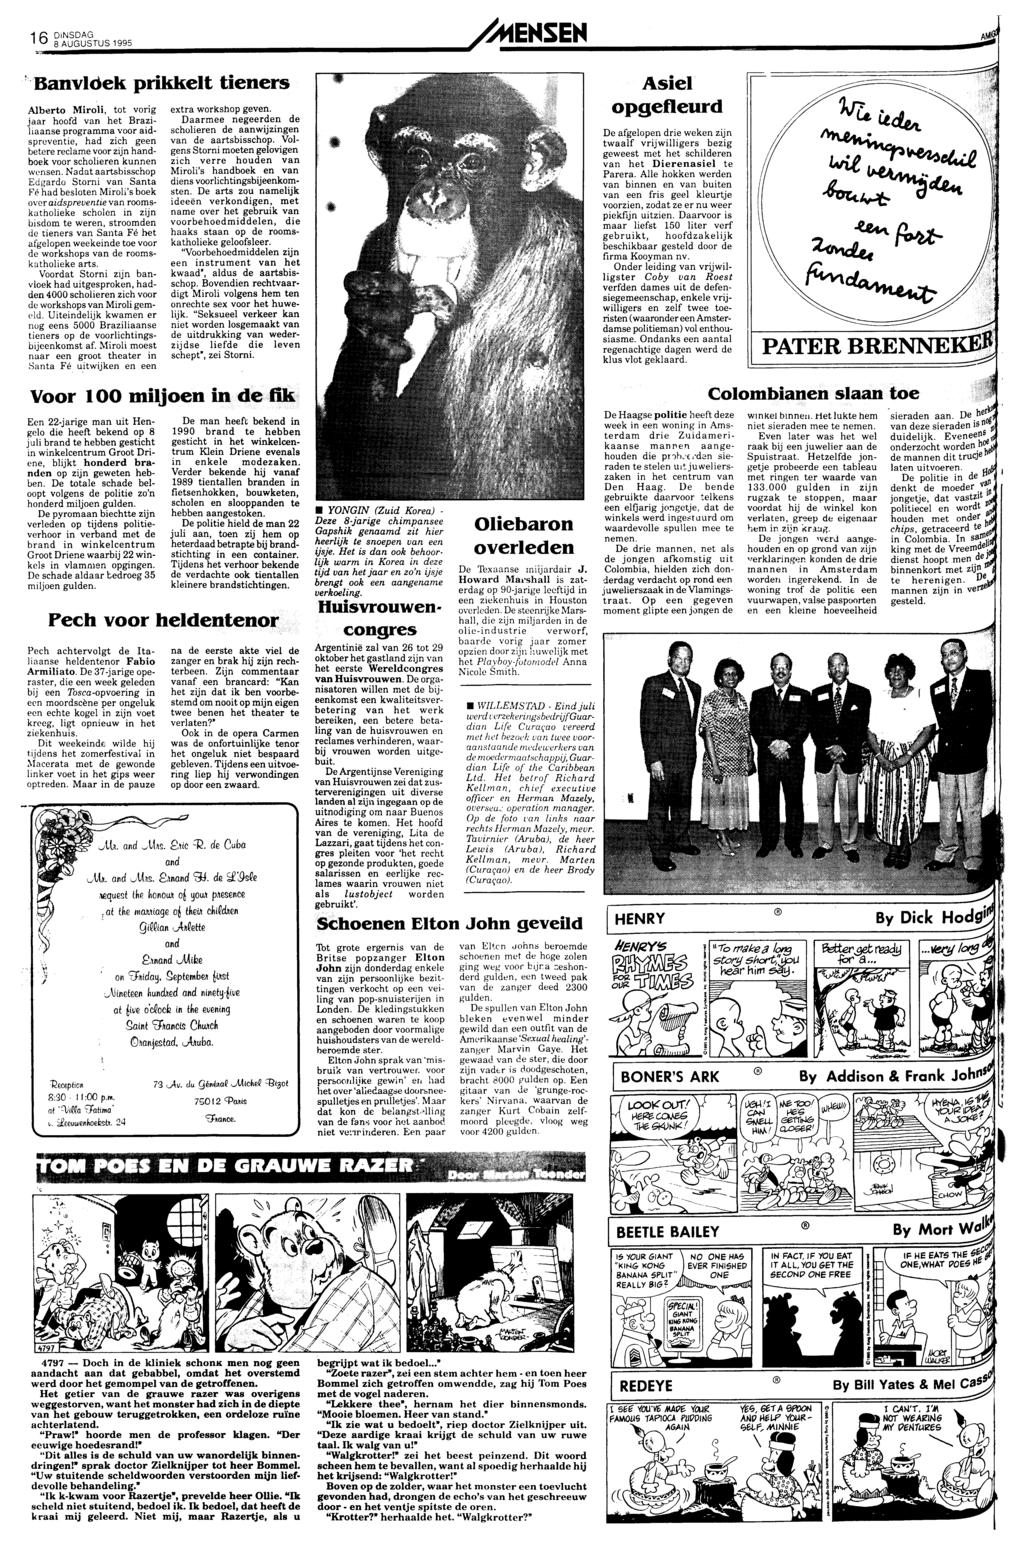 BEETLE BAILEY By Mort Walker 16 8 AUGUSTUS 1995 /MENSEN Mm Banvloek prikkelt tieners Alberto Miroli, tot vorig jaar hoofd van het Braziliaanseprogramma voor aidspreventie, had zich geen betere